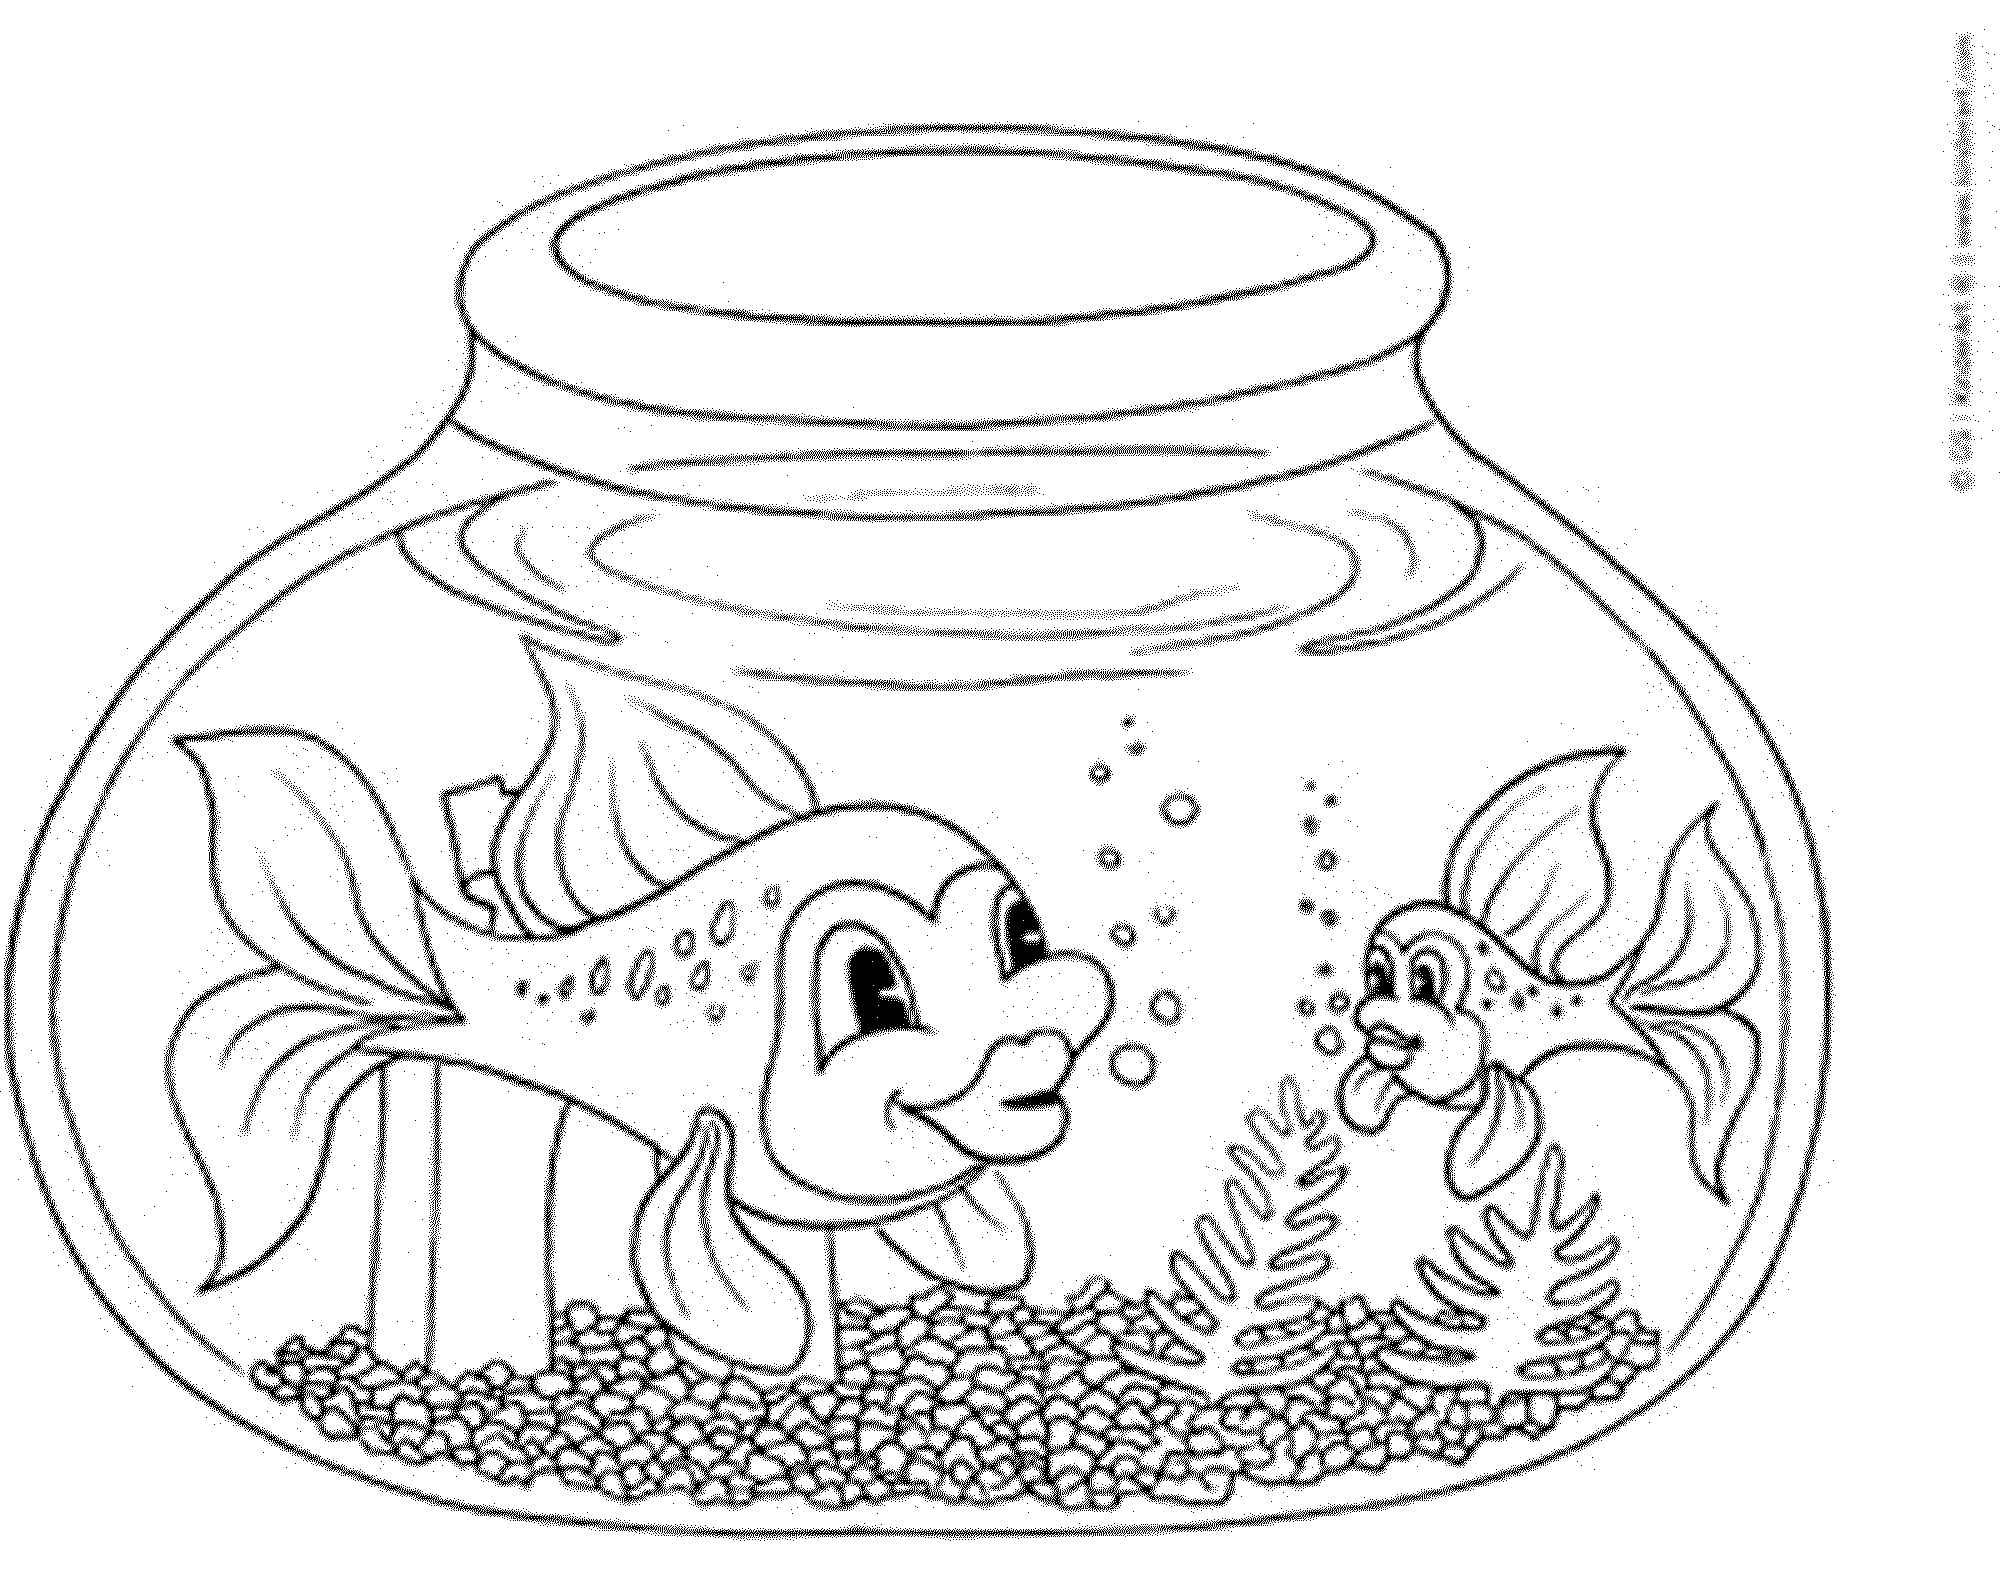 Картинка для раскрашивания рыбки: Детские раскраски рыб